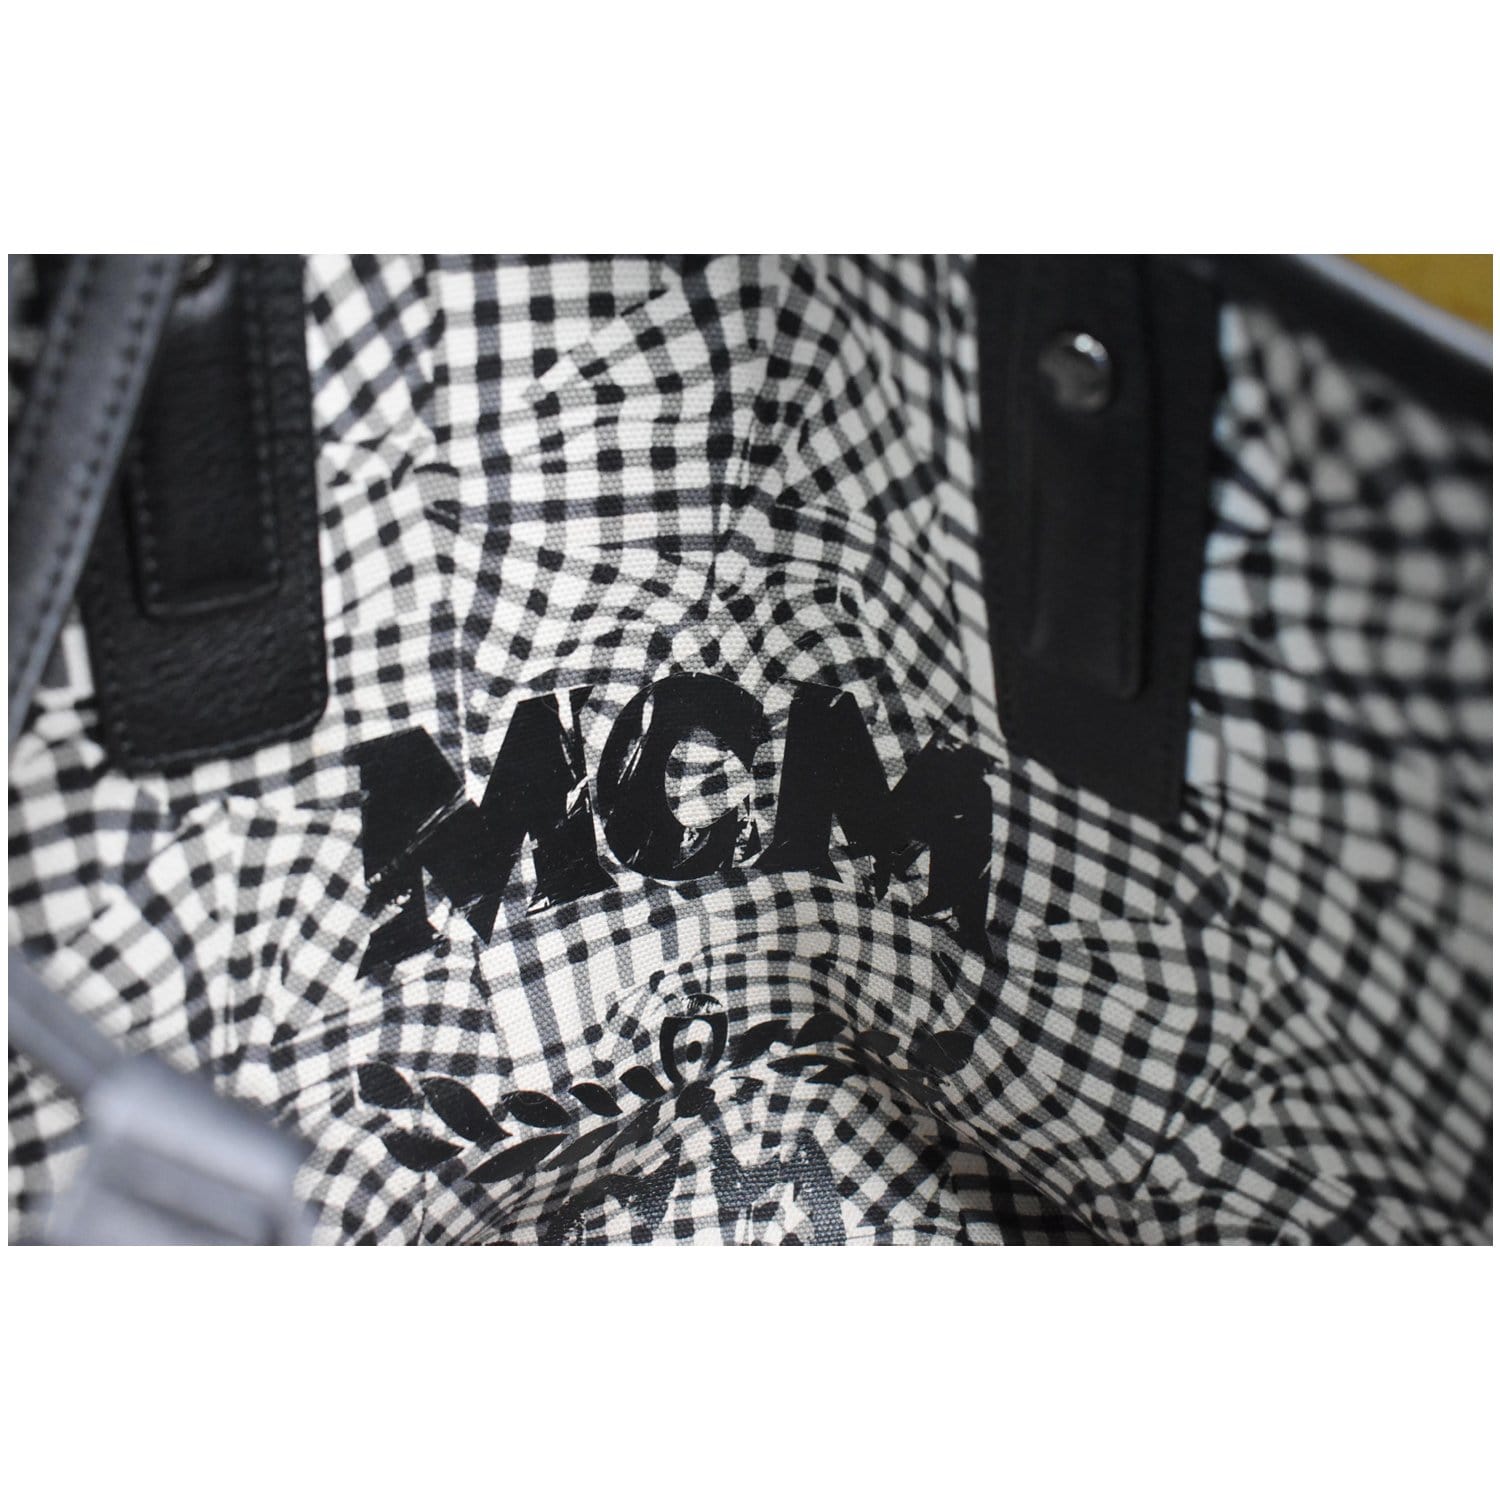 Black MCM Visetos Reversible Liz Tote Bag – Designer Revival